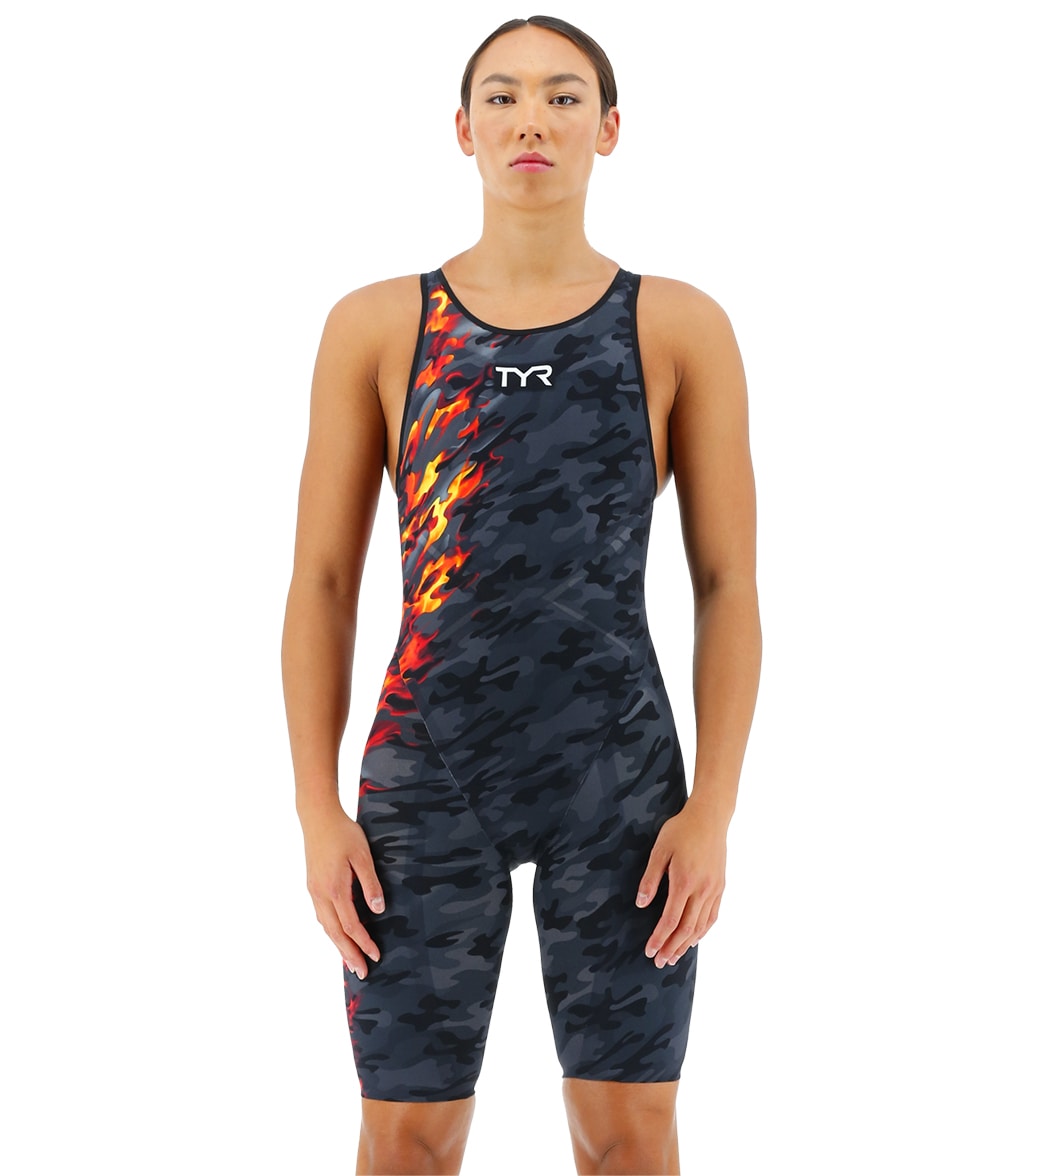 TYR Women's Venzo Camo Open Back Tech Suit Swimsuit - Fire 23 - Swimoutlet.com